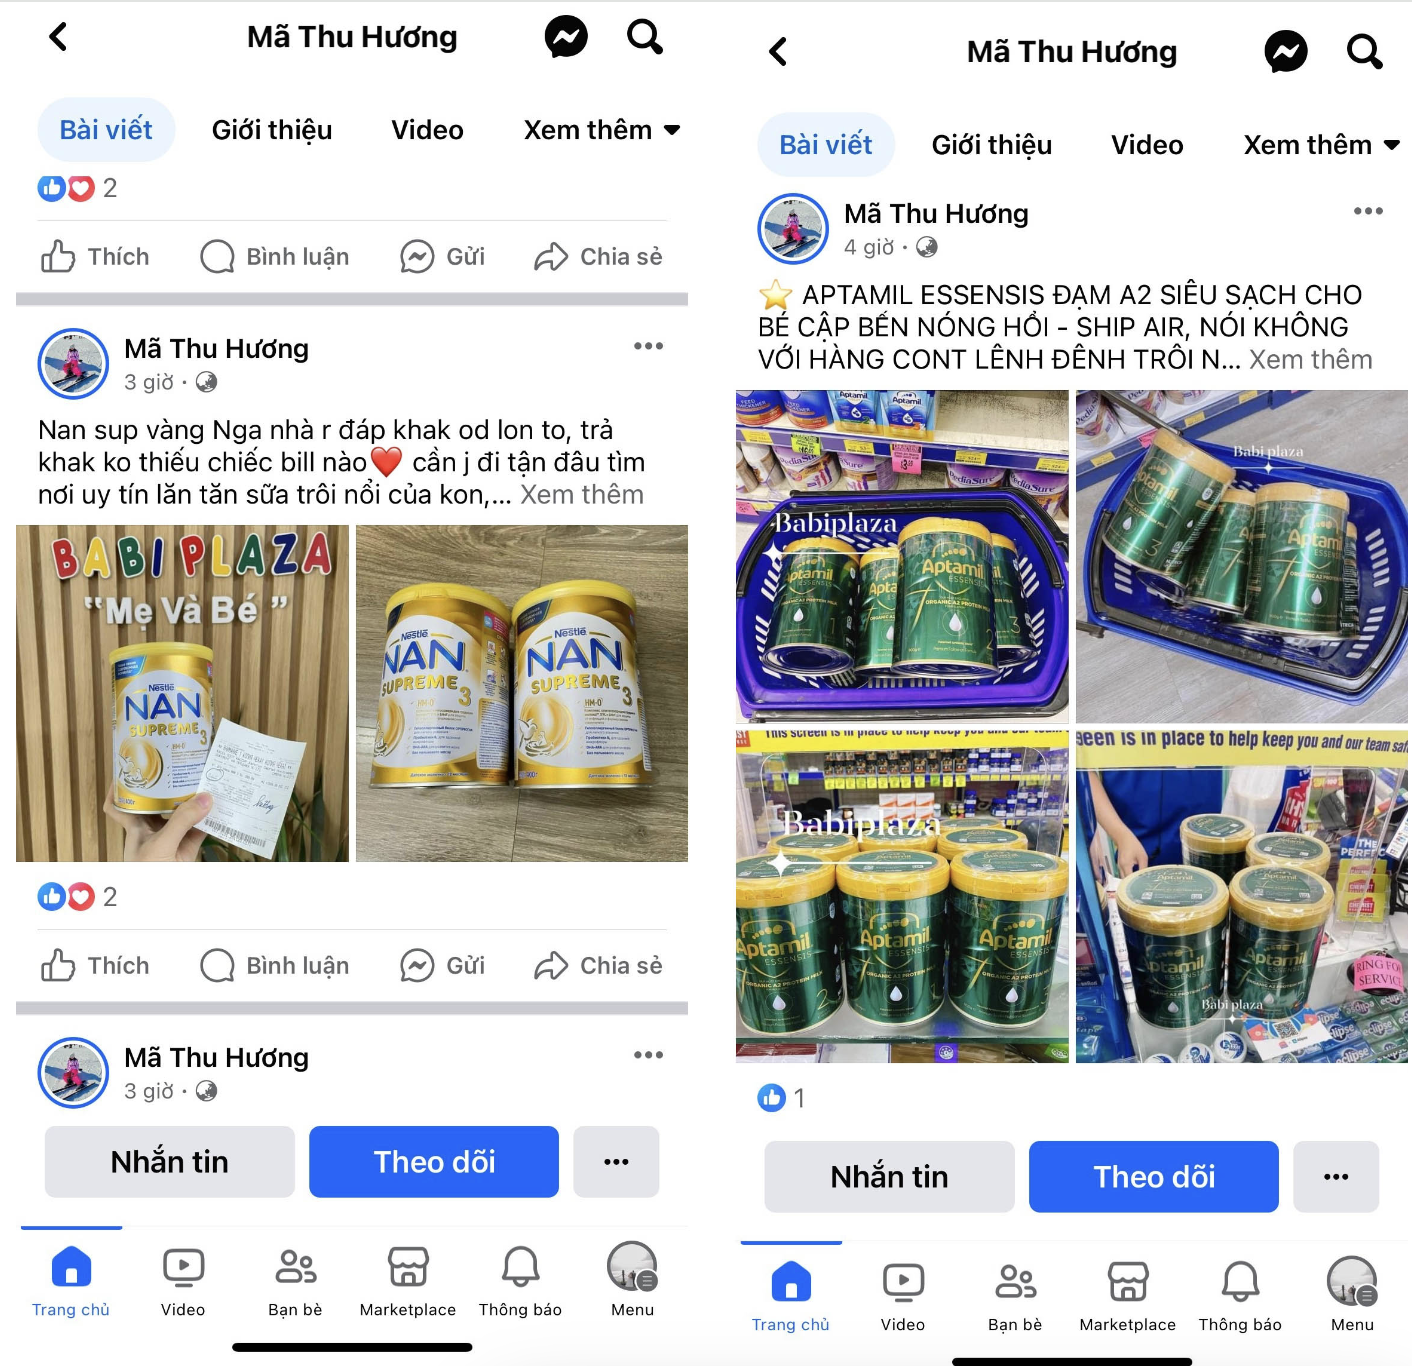 Tiểu thương vô tư bán hàng chục sản phẩm sữa nhập lậu trên mạng xã hội - Ảnh 2.